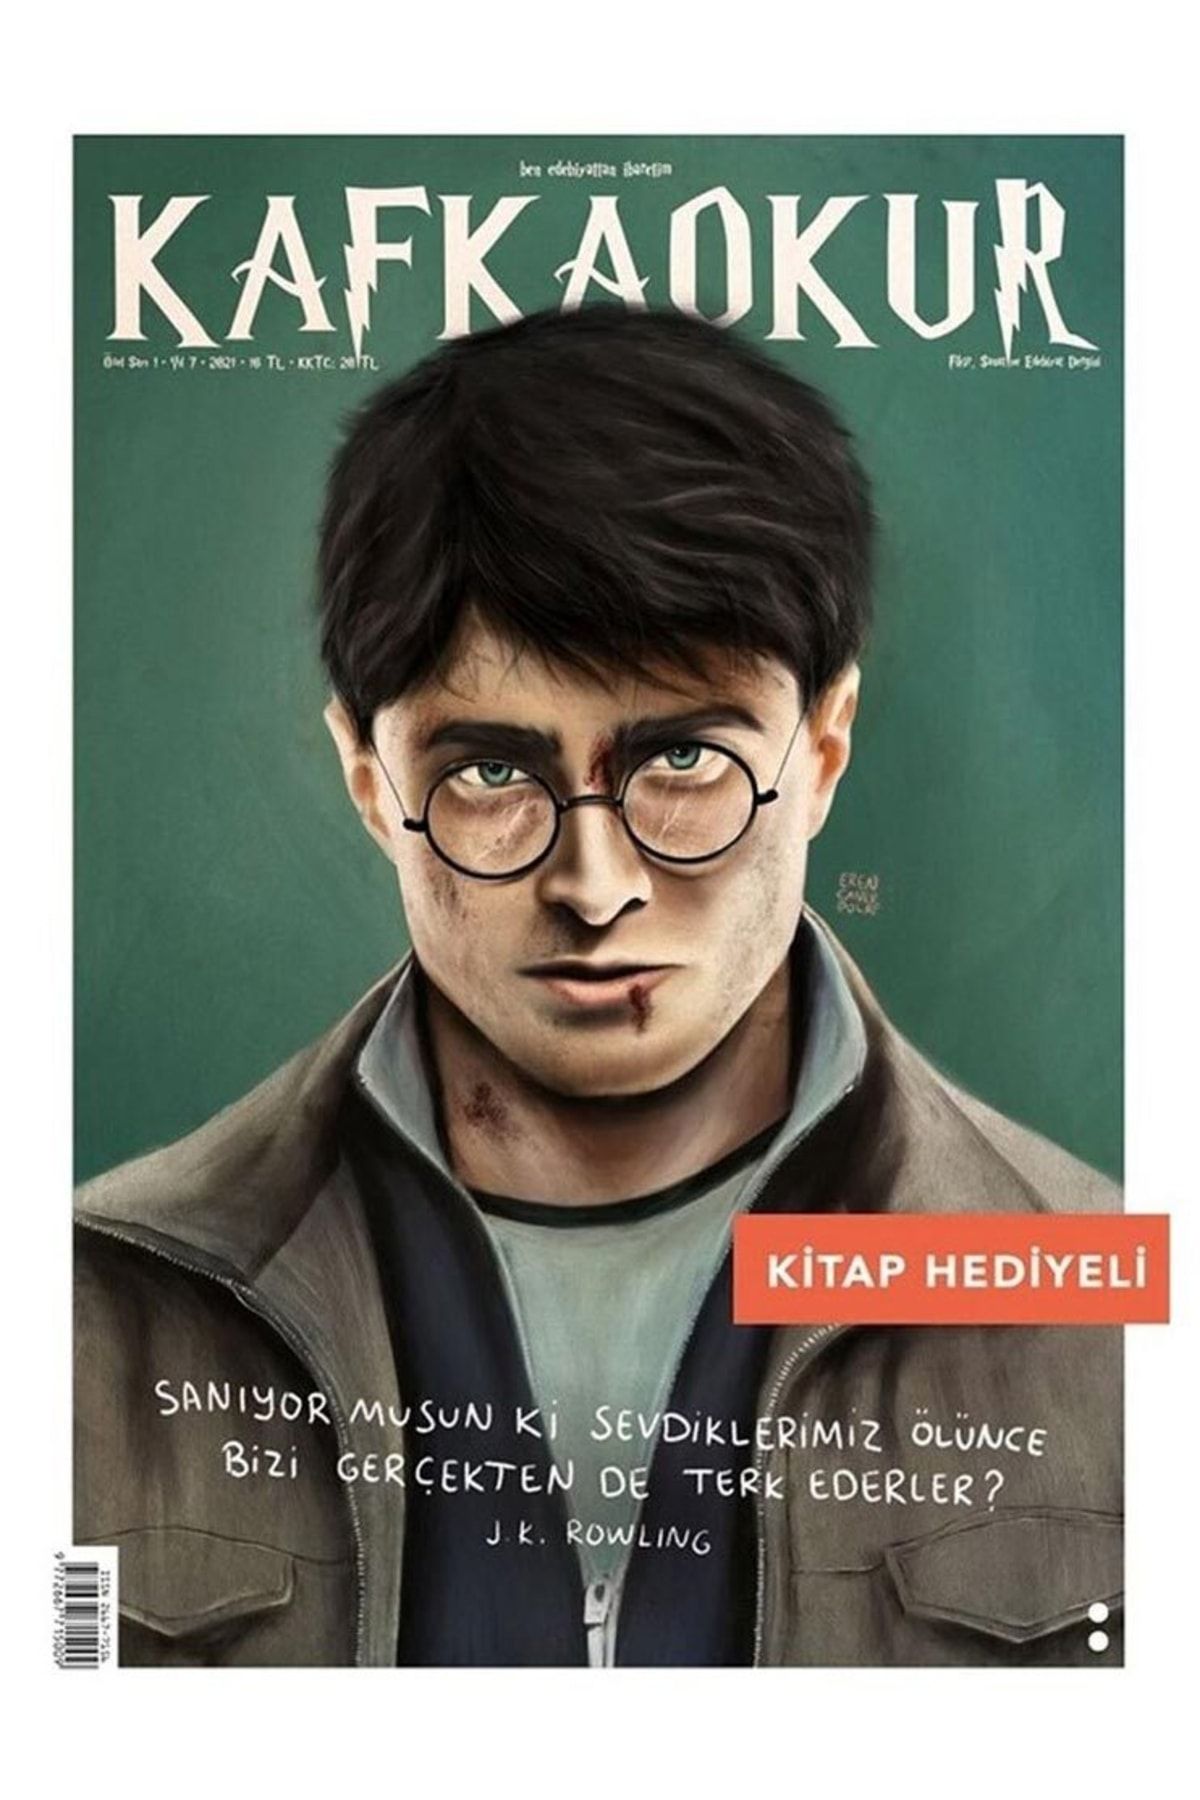 KafkaOkur Dergisi Kafkaokur Kitap Hediyeli - Harry Potter (j.k. Rowling) Özel Sayı